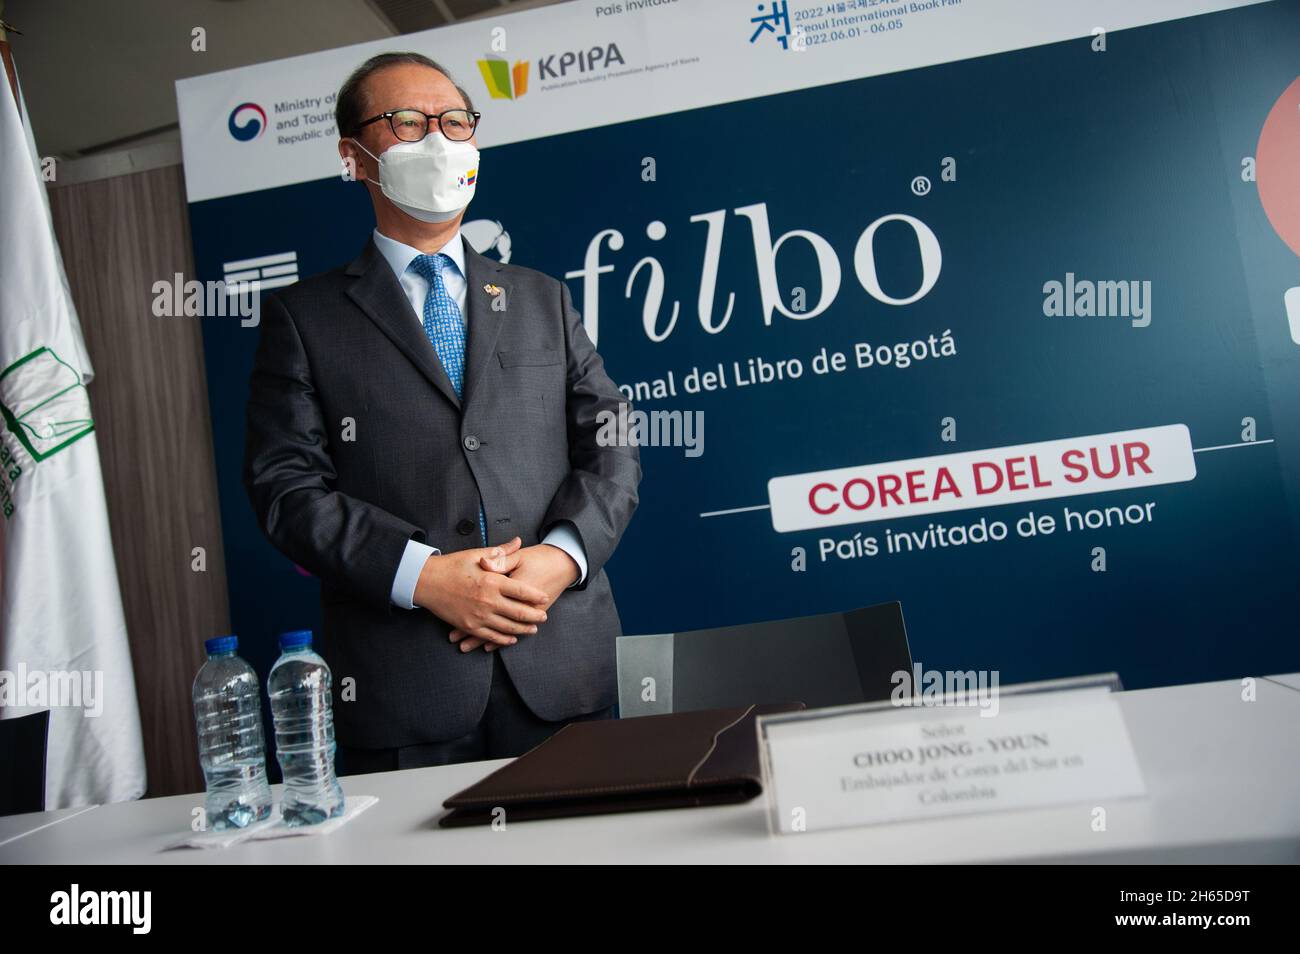 Choo Jong-Youn Ambasciatore per la repubblica di Corea del Sud in Colombia durante l'annuncio dell'evento da parte del Ministero della Cultura della Colombia dell'invitatio Foto Stock